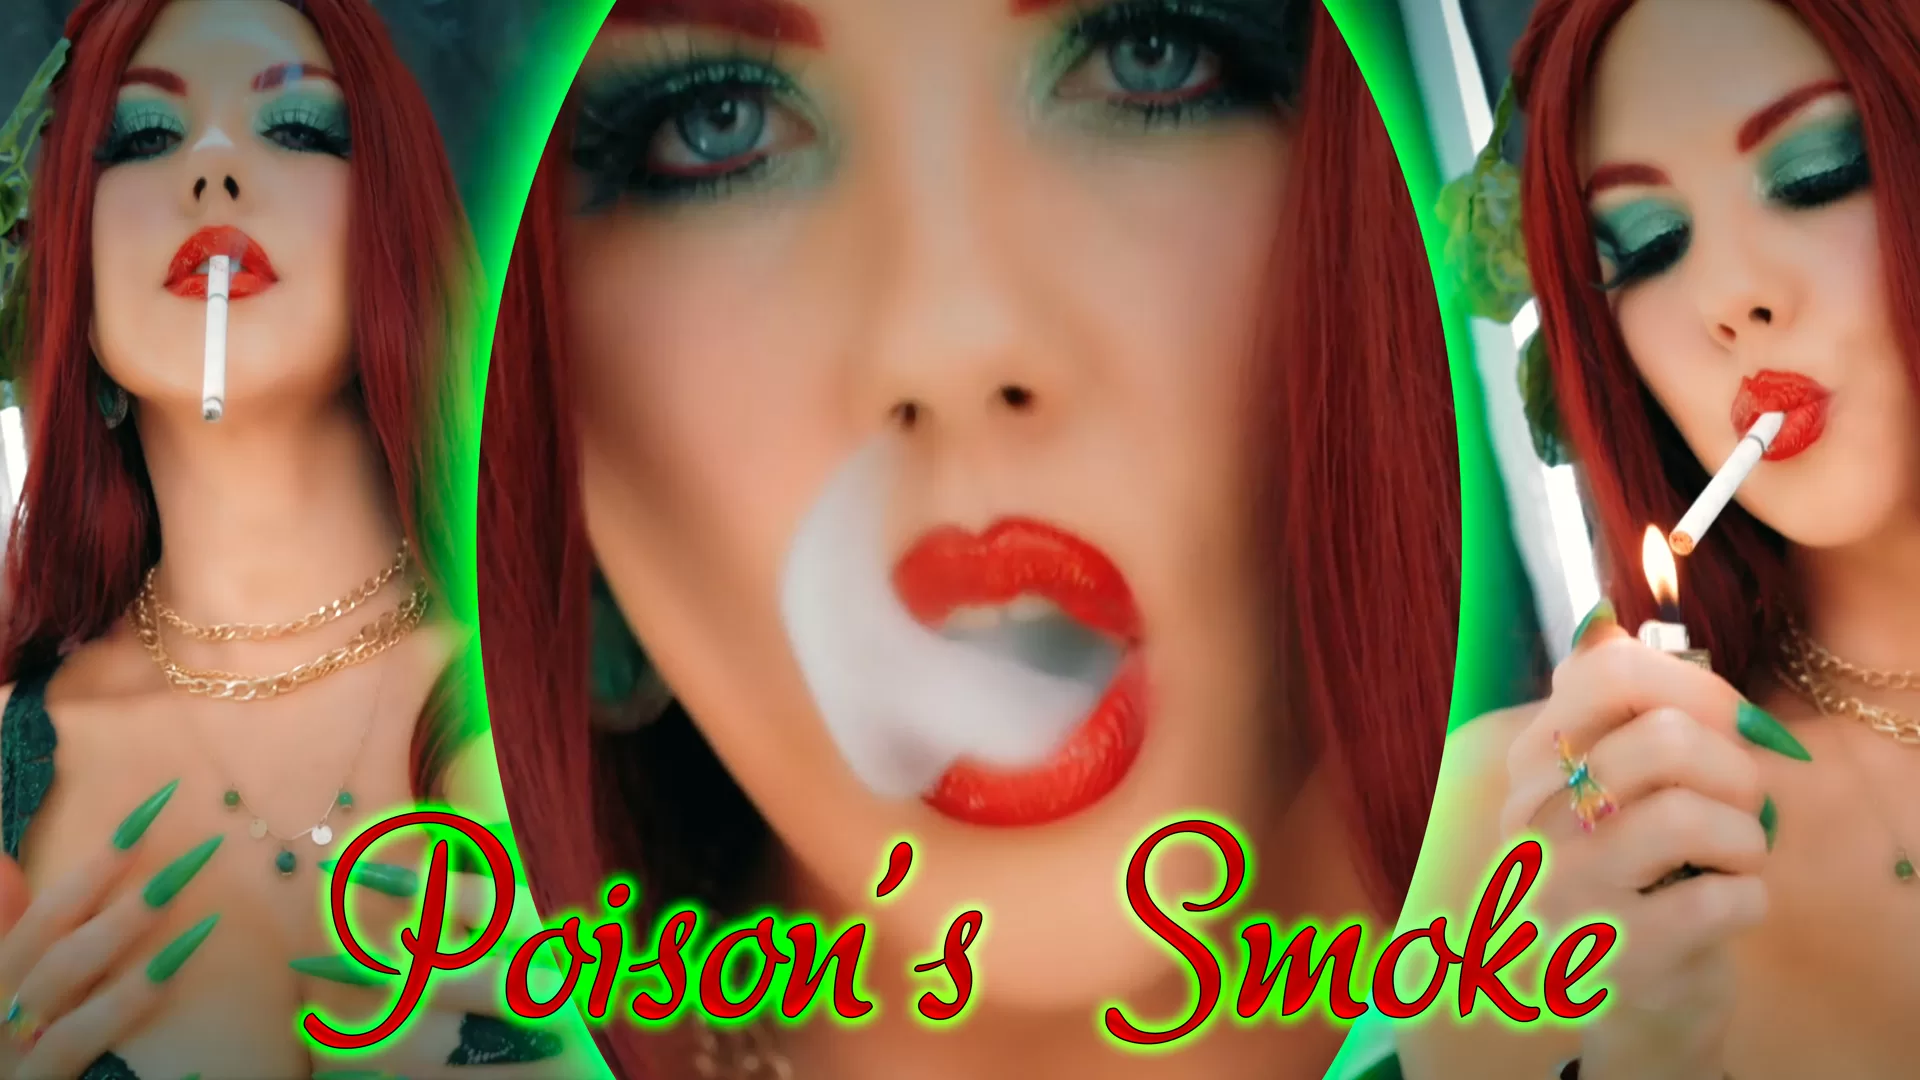 Poison's Smoke - Young Goddess Kim - Smoking Fetish Clips